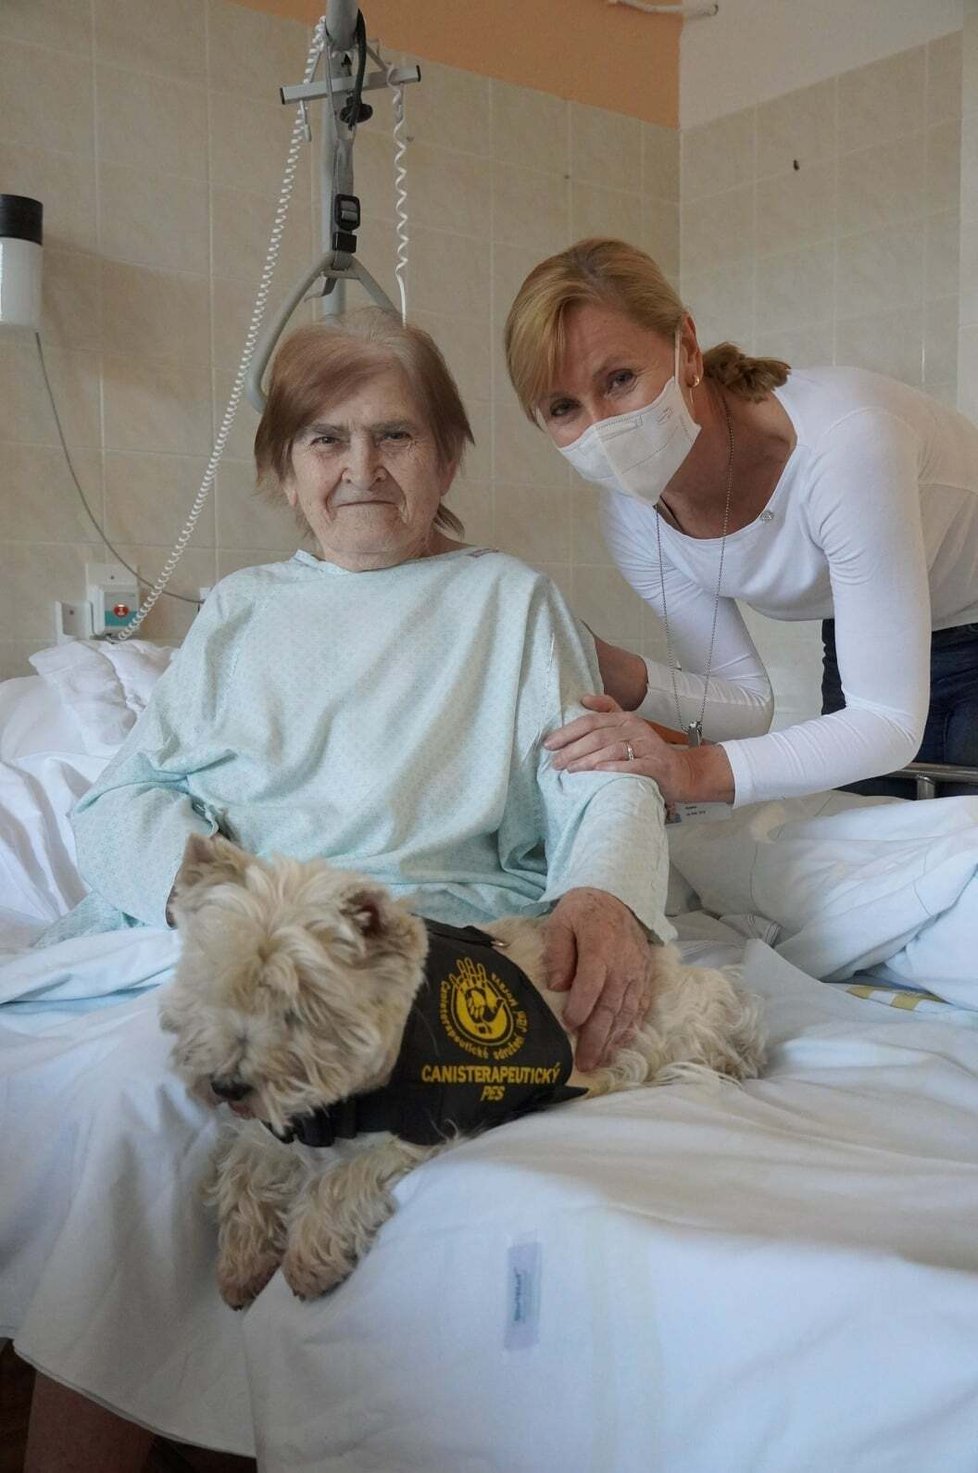 Nemocnice v Blansku po covidové pauze obnovila canisterapii na oddělení následné péče, cvičení psi tak znovu pomáhají s rehabilitací pacientů.